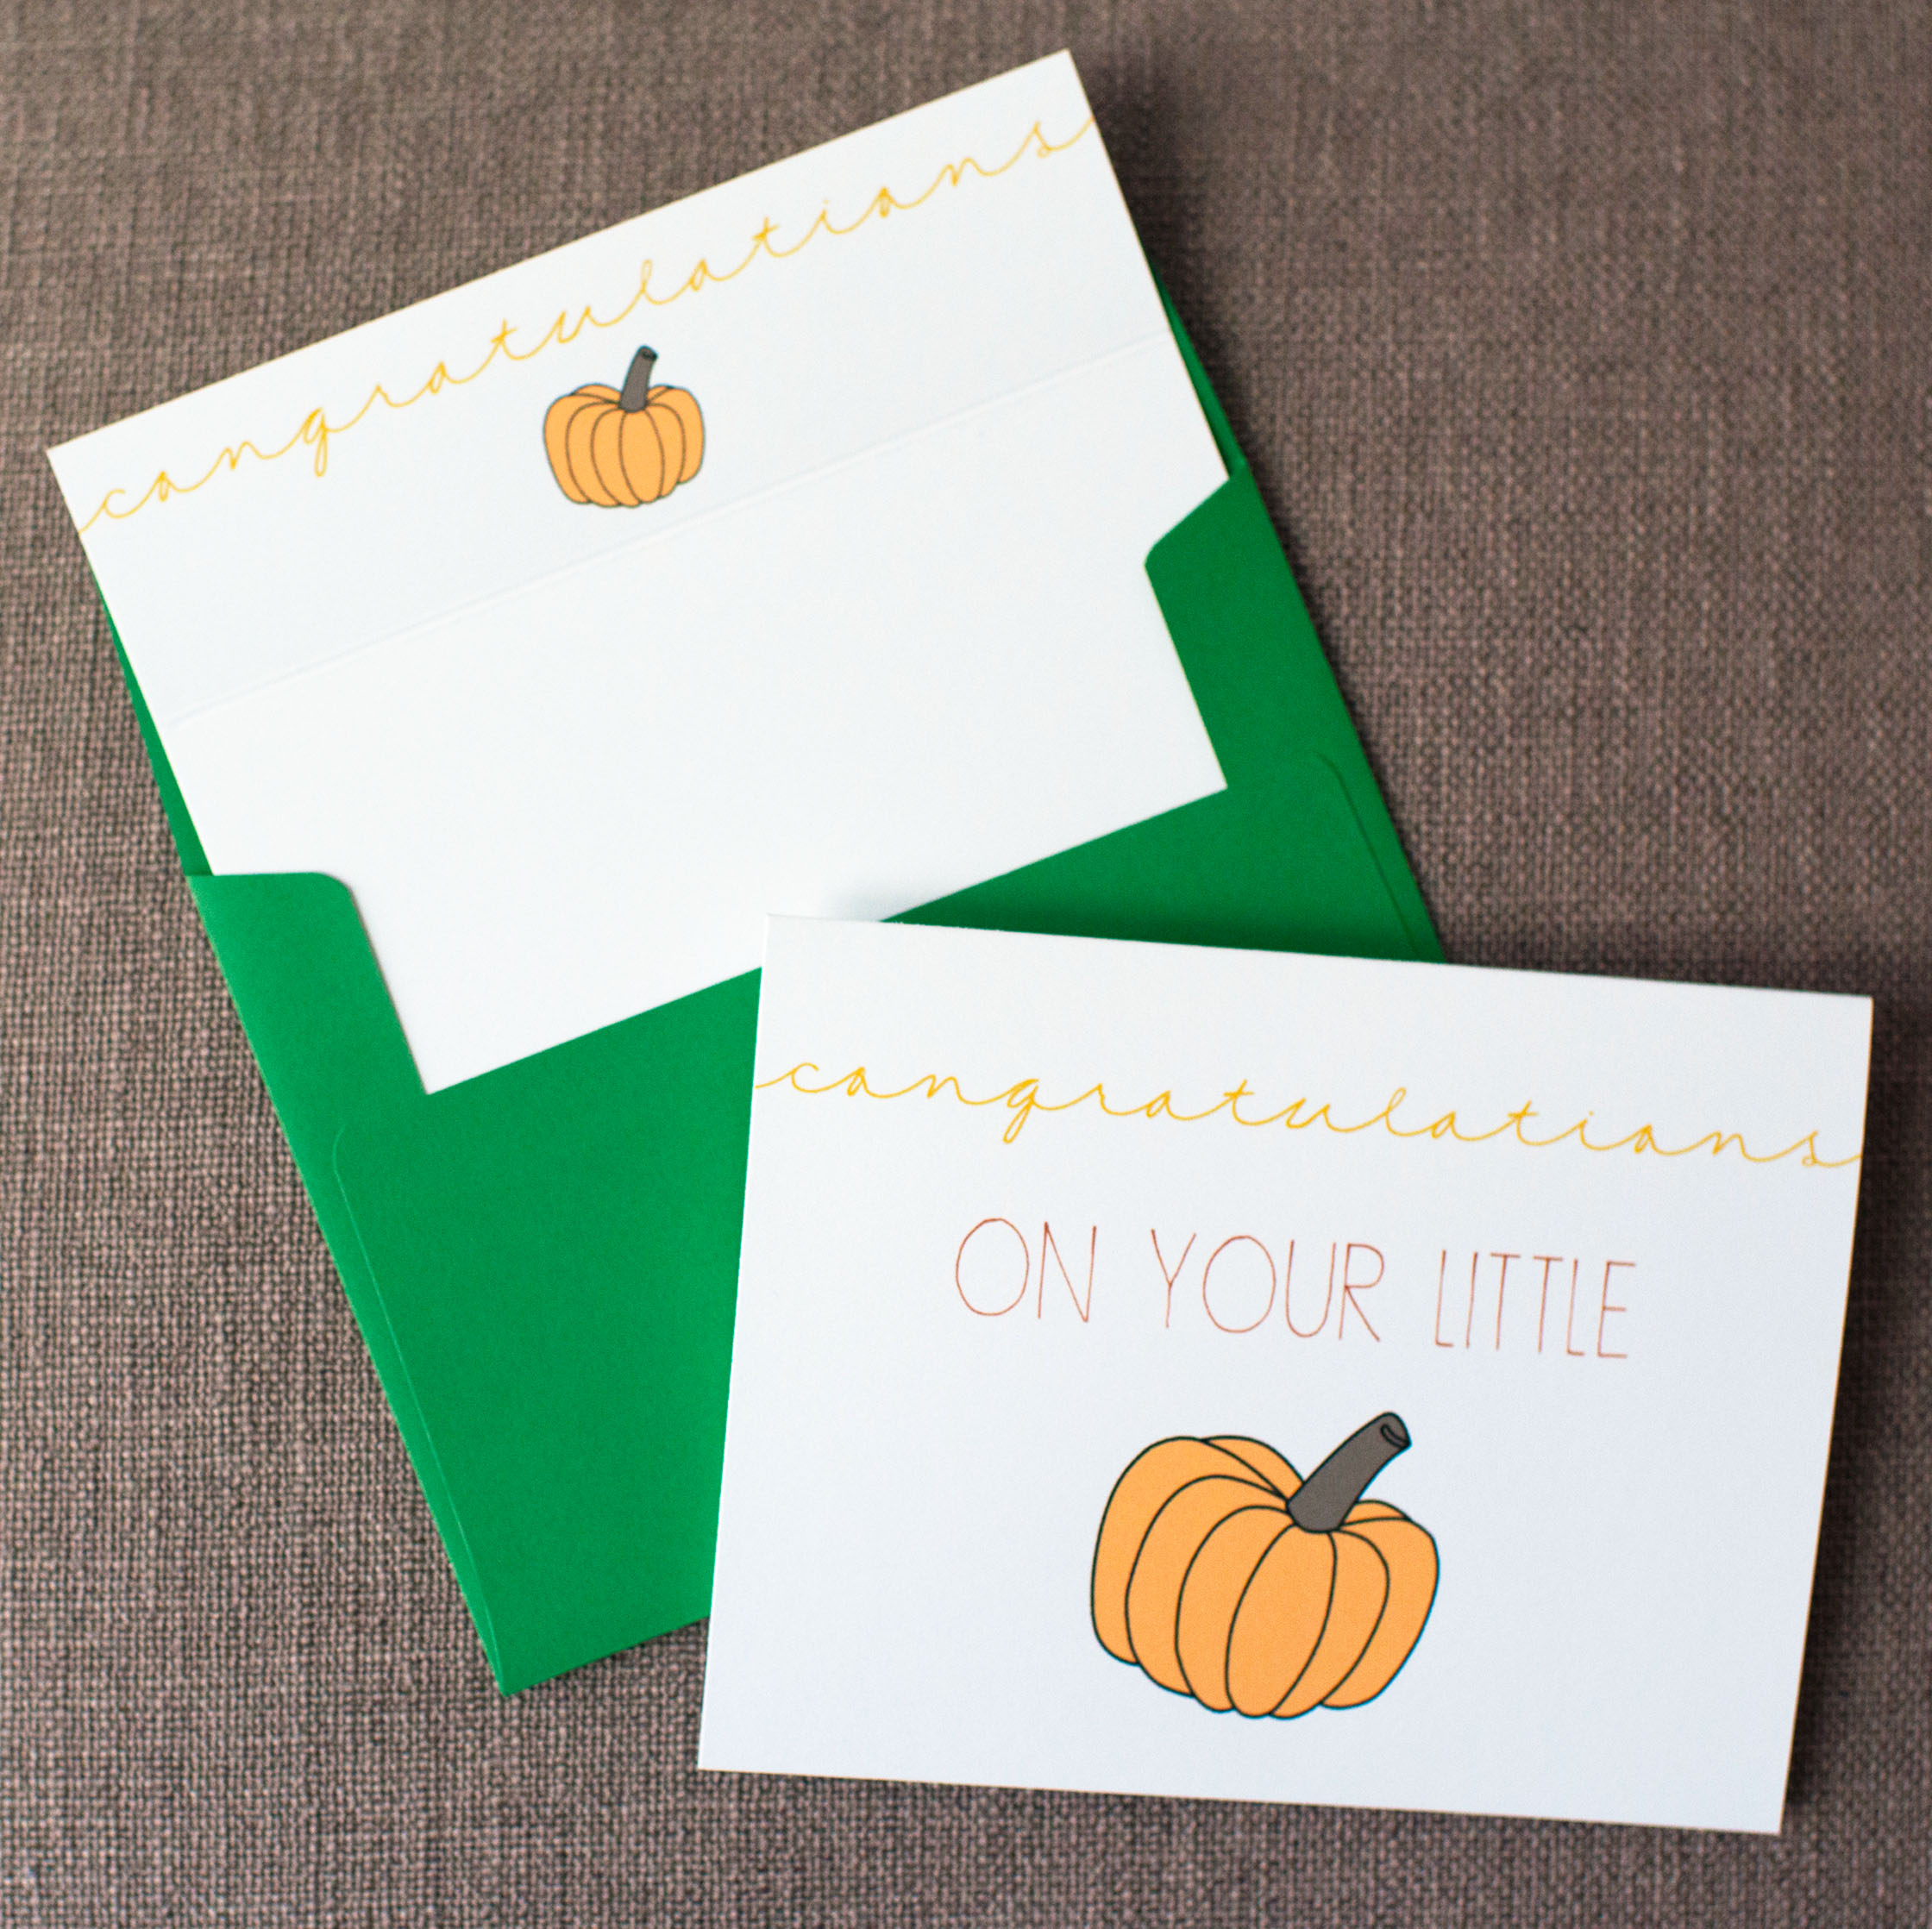 Congratulations On Your Little Pumpkin - Yellow Card